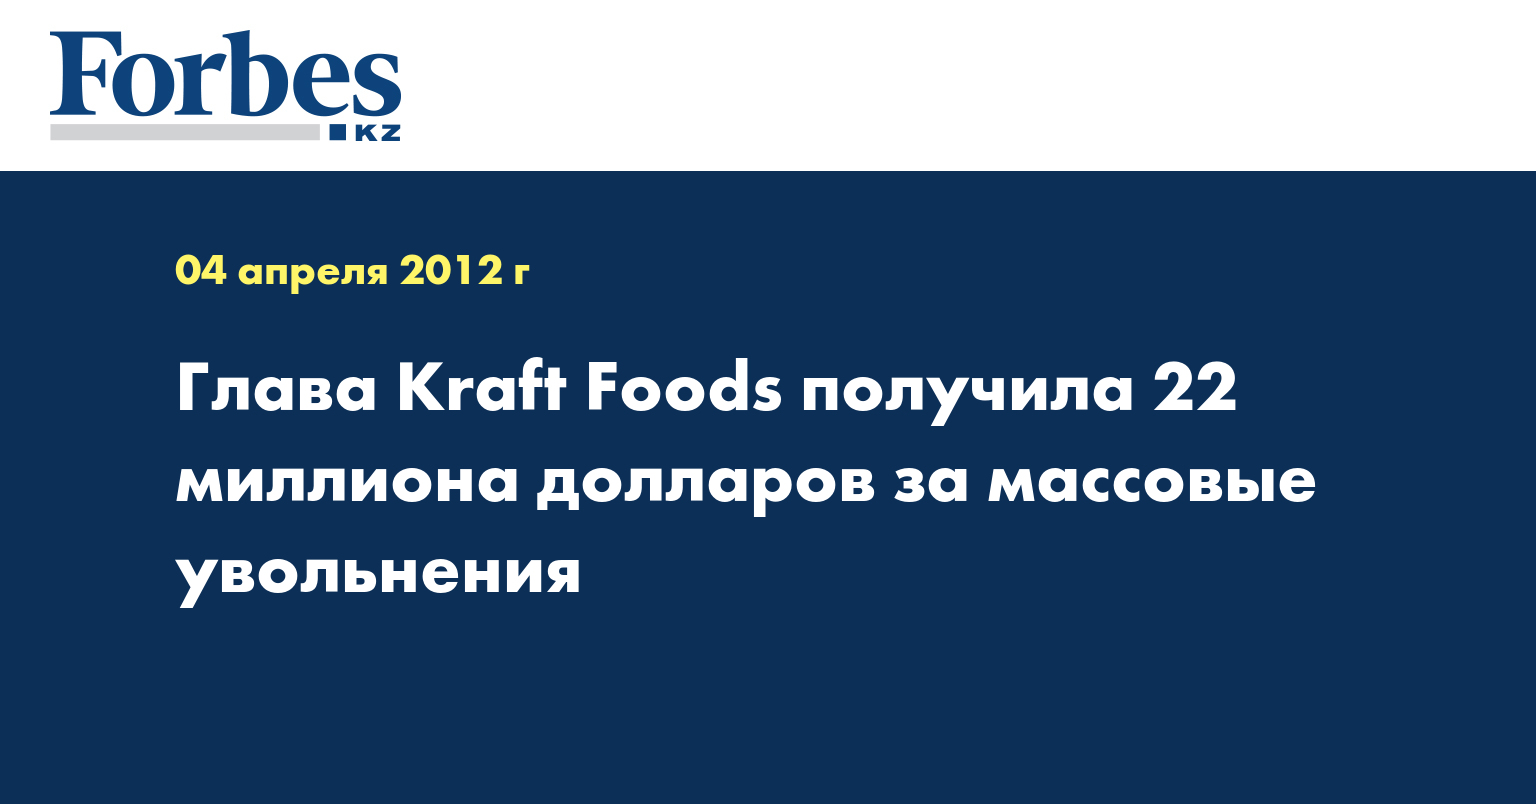 Глава Kraft Foods получила 22 миллиона долларов за массовые увольнения